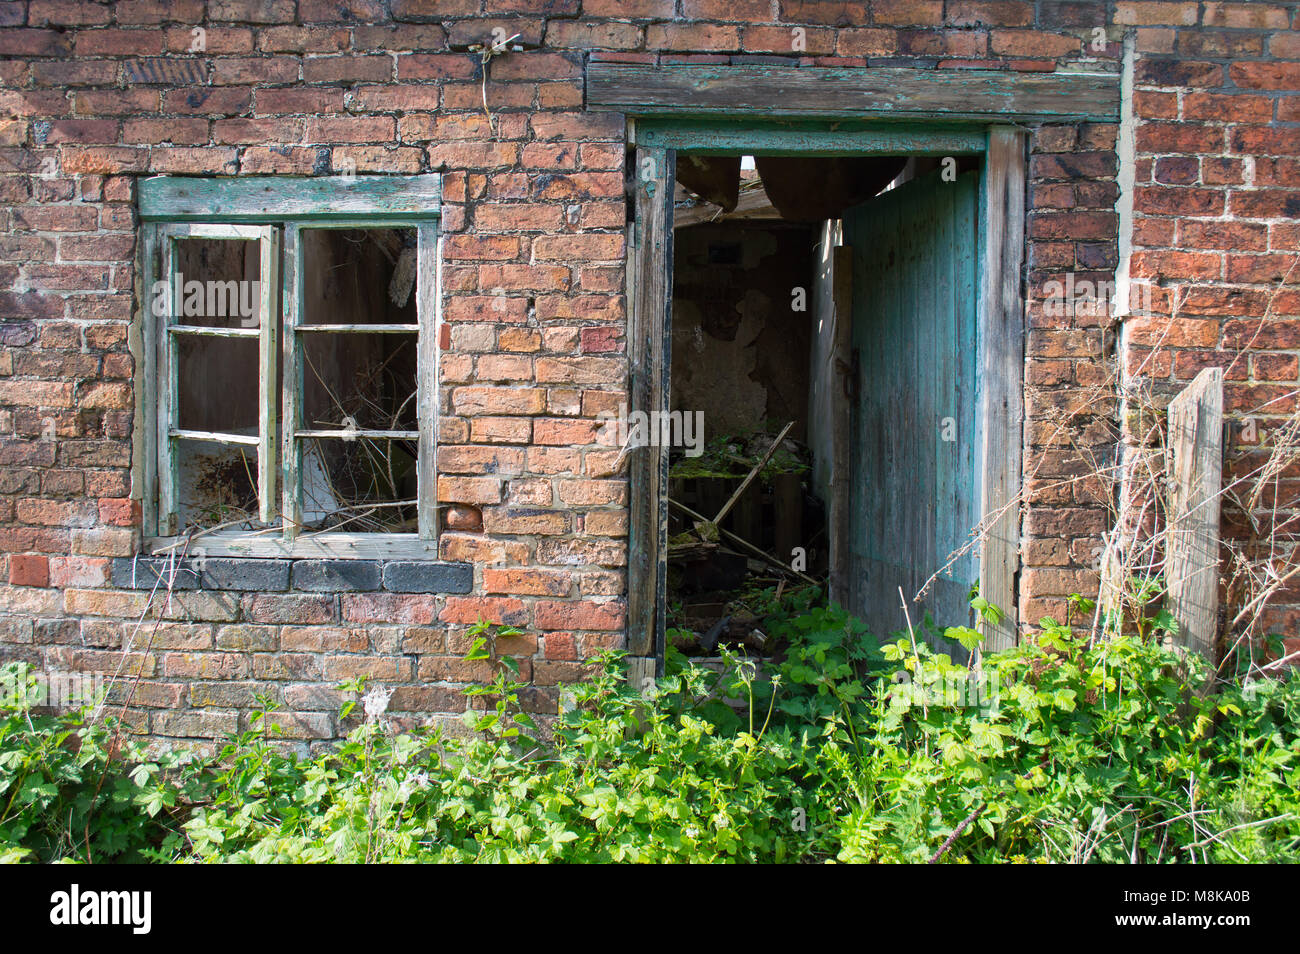 Eine alte verfallene, verrottete grünes Fenster und Türrahmen gegen eine Red brick wall, mit Pflanzen bewachsen und Brambles. Stockfoto